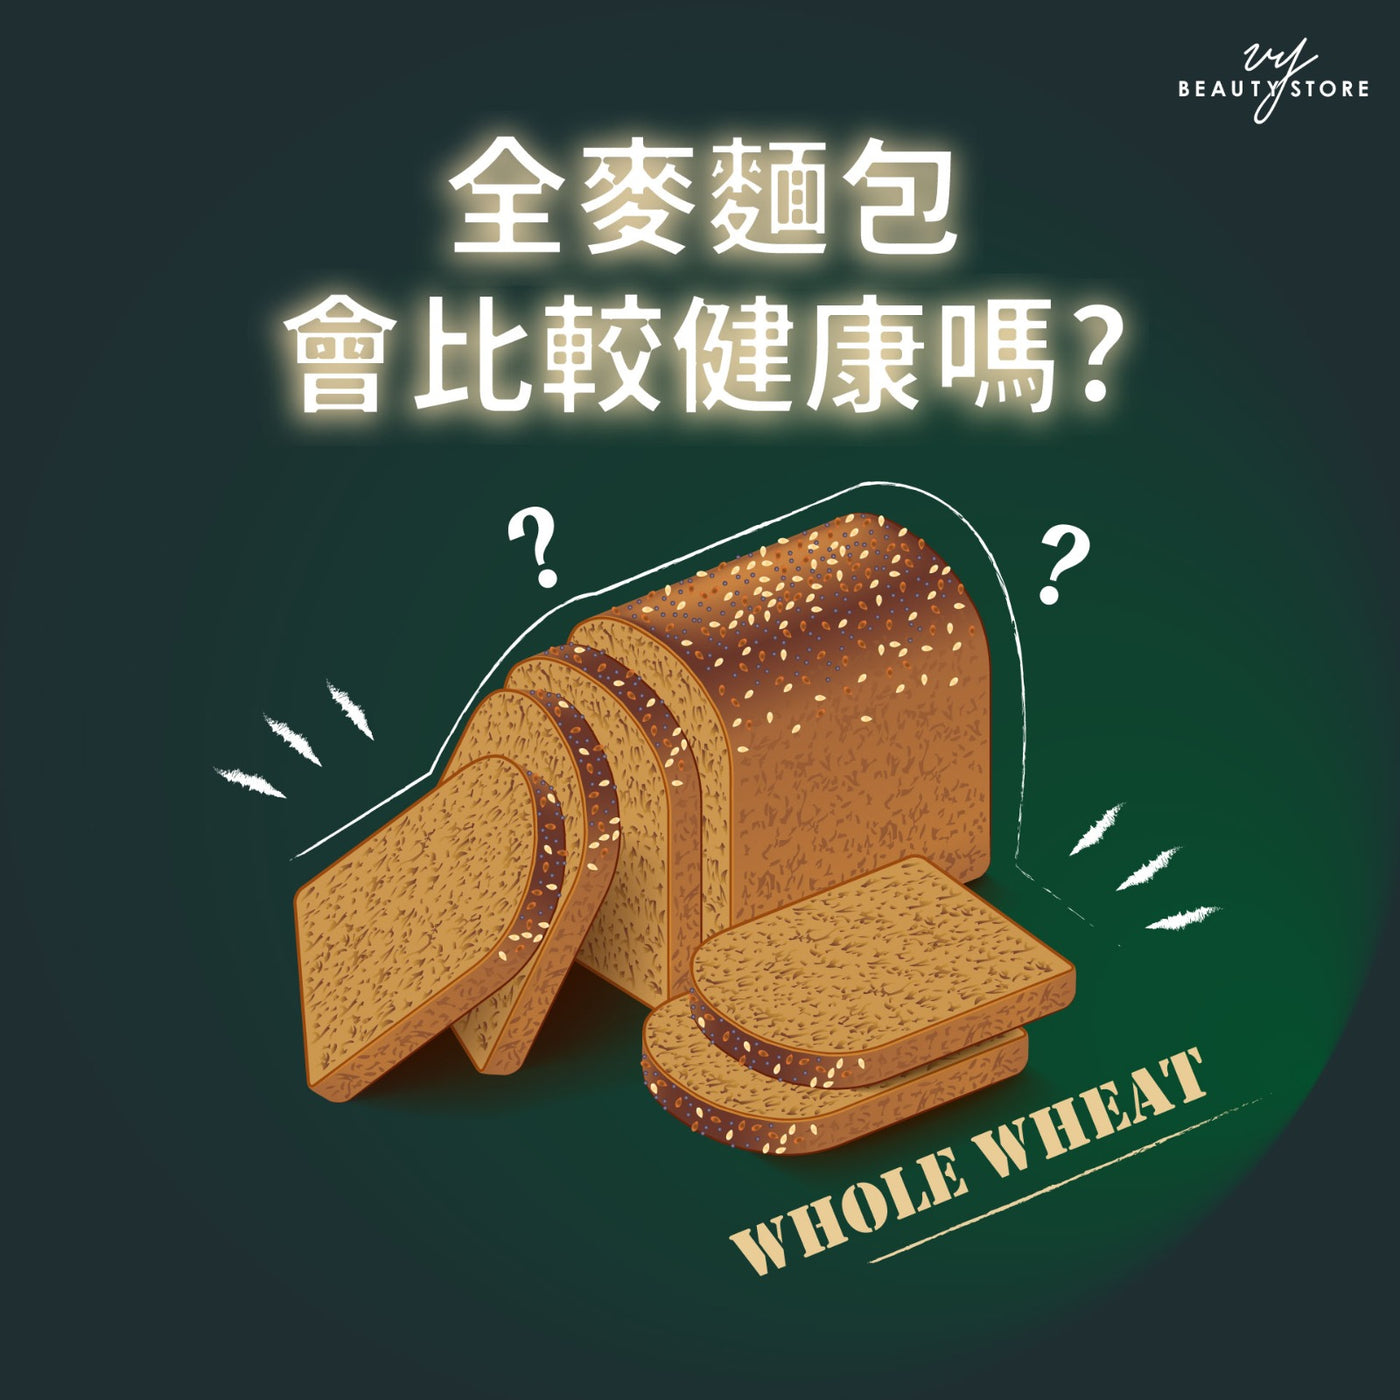 全麦面包会比较健康吗？ 🍞